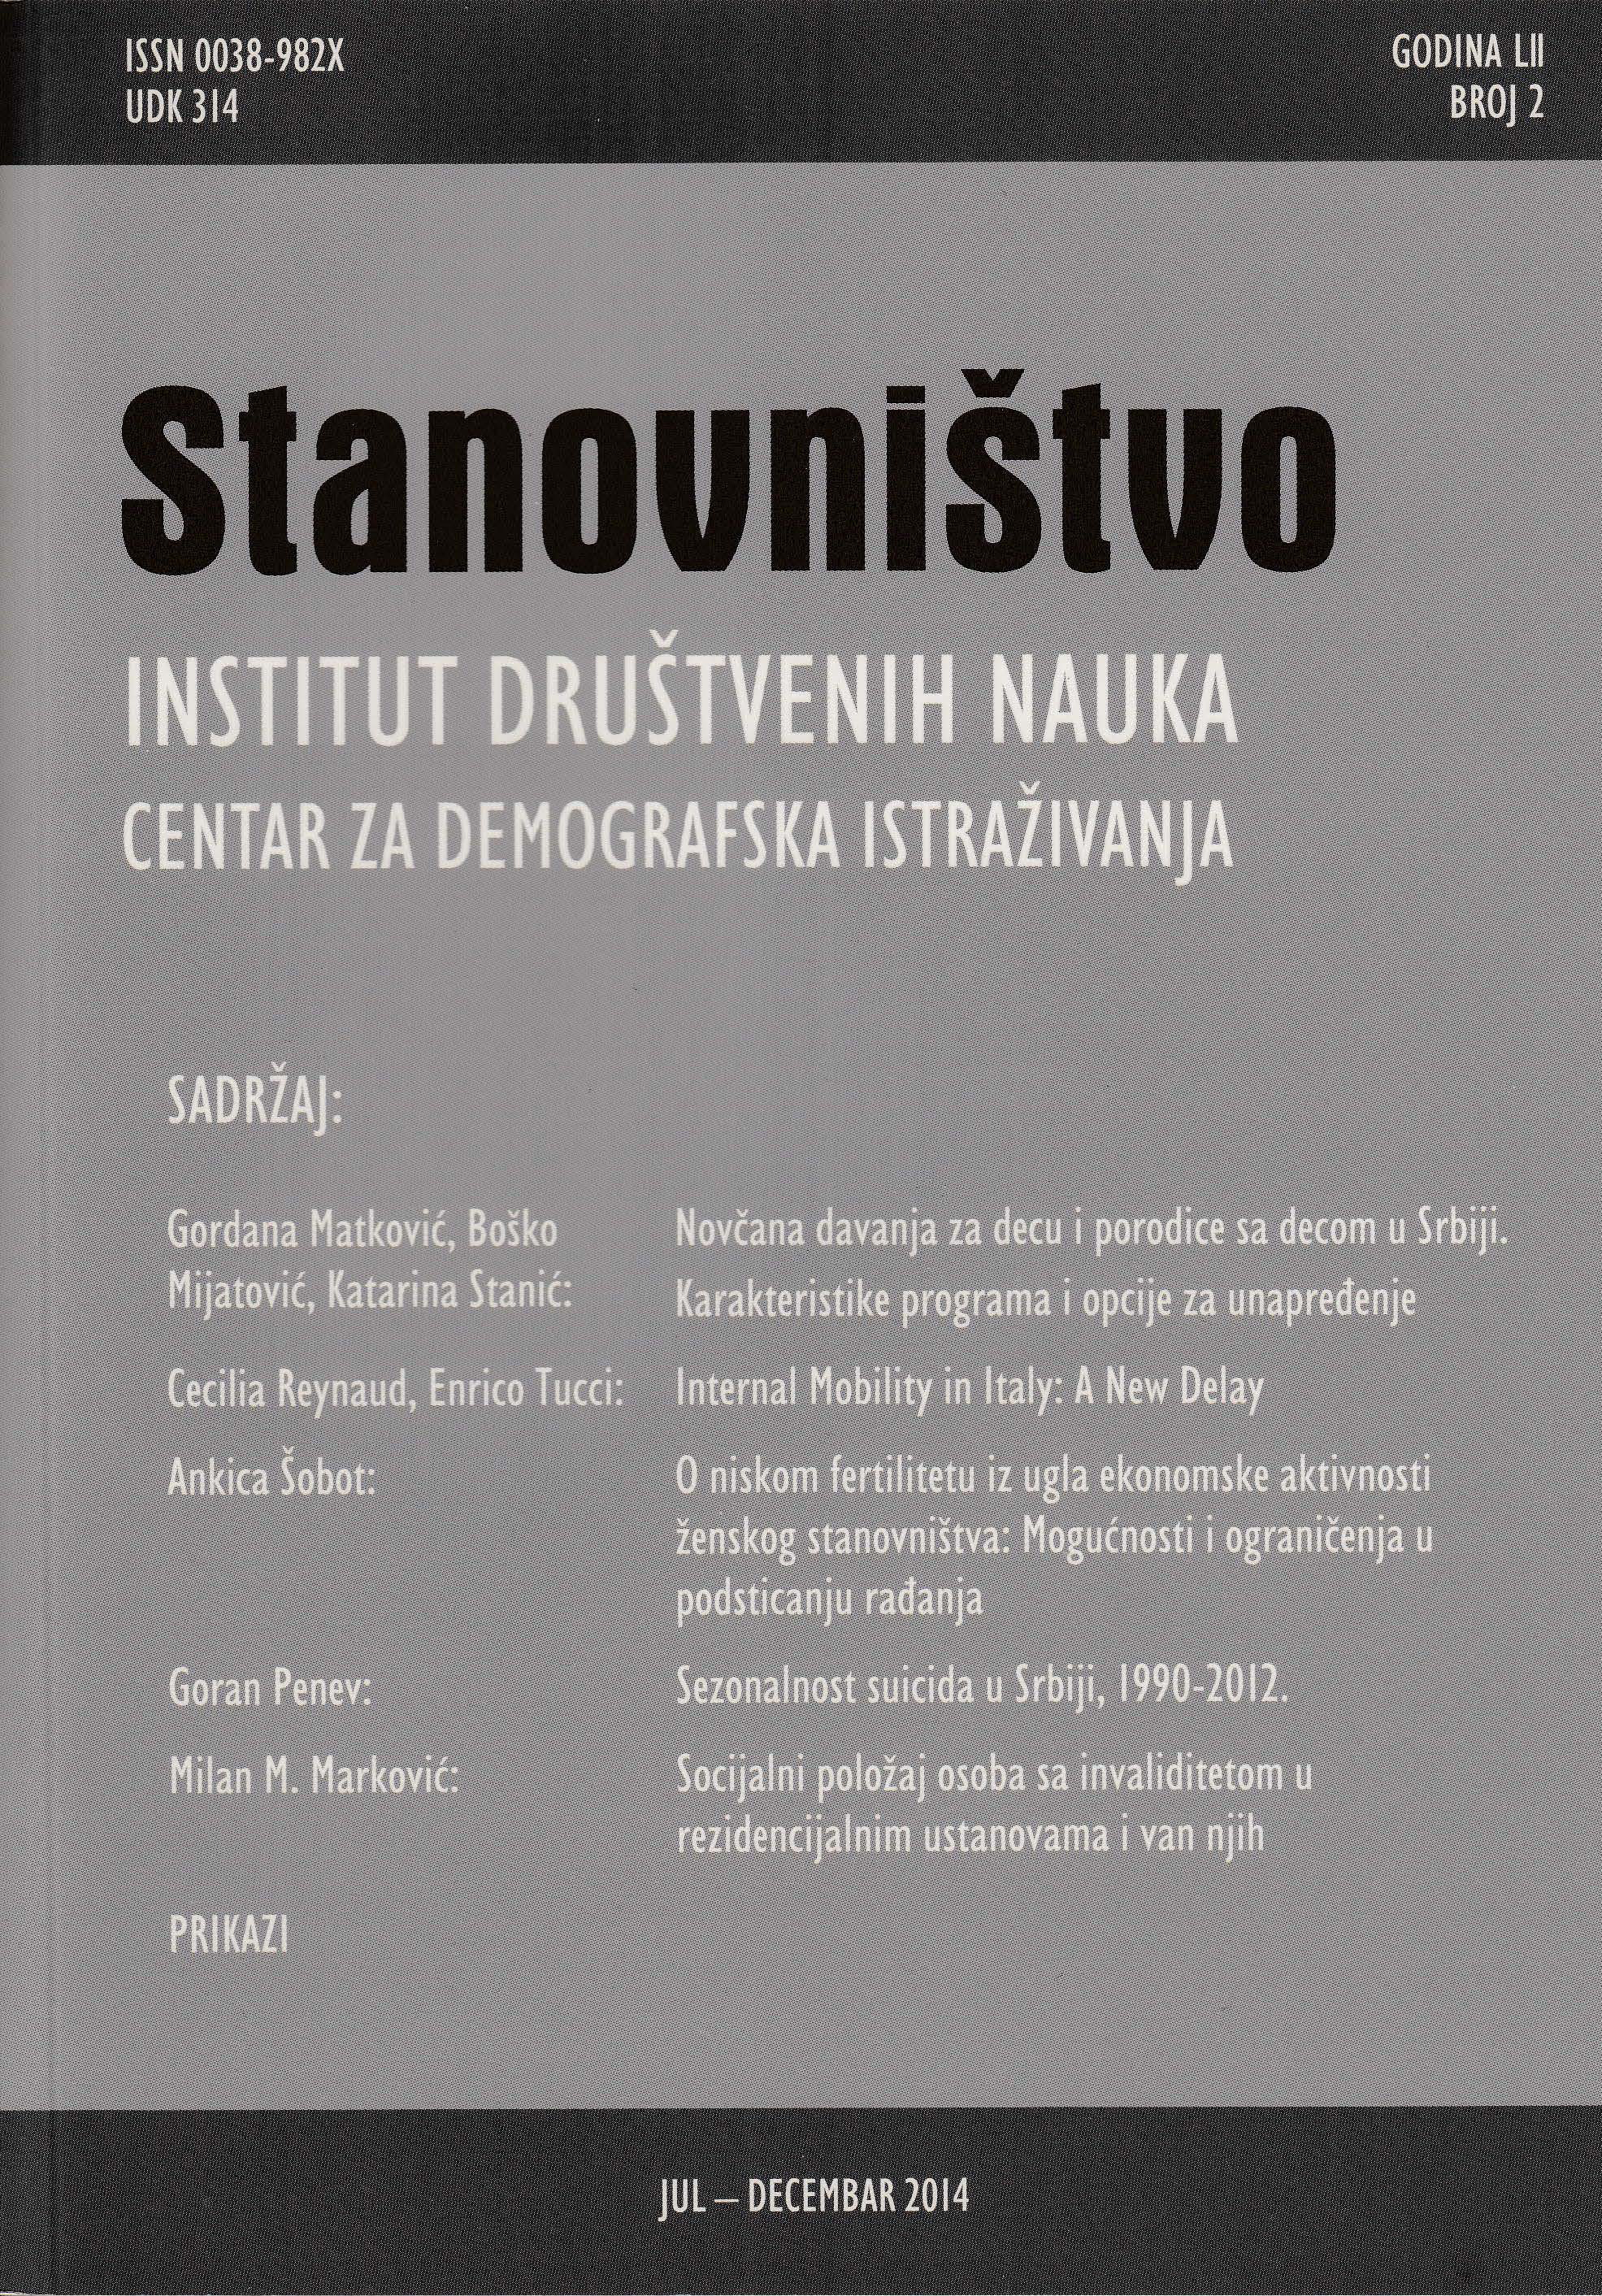 Sezonalnost suicida u Srbiji, 1990-2012.